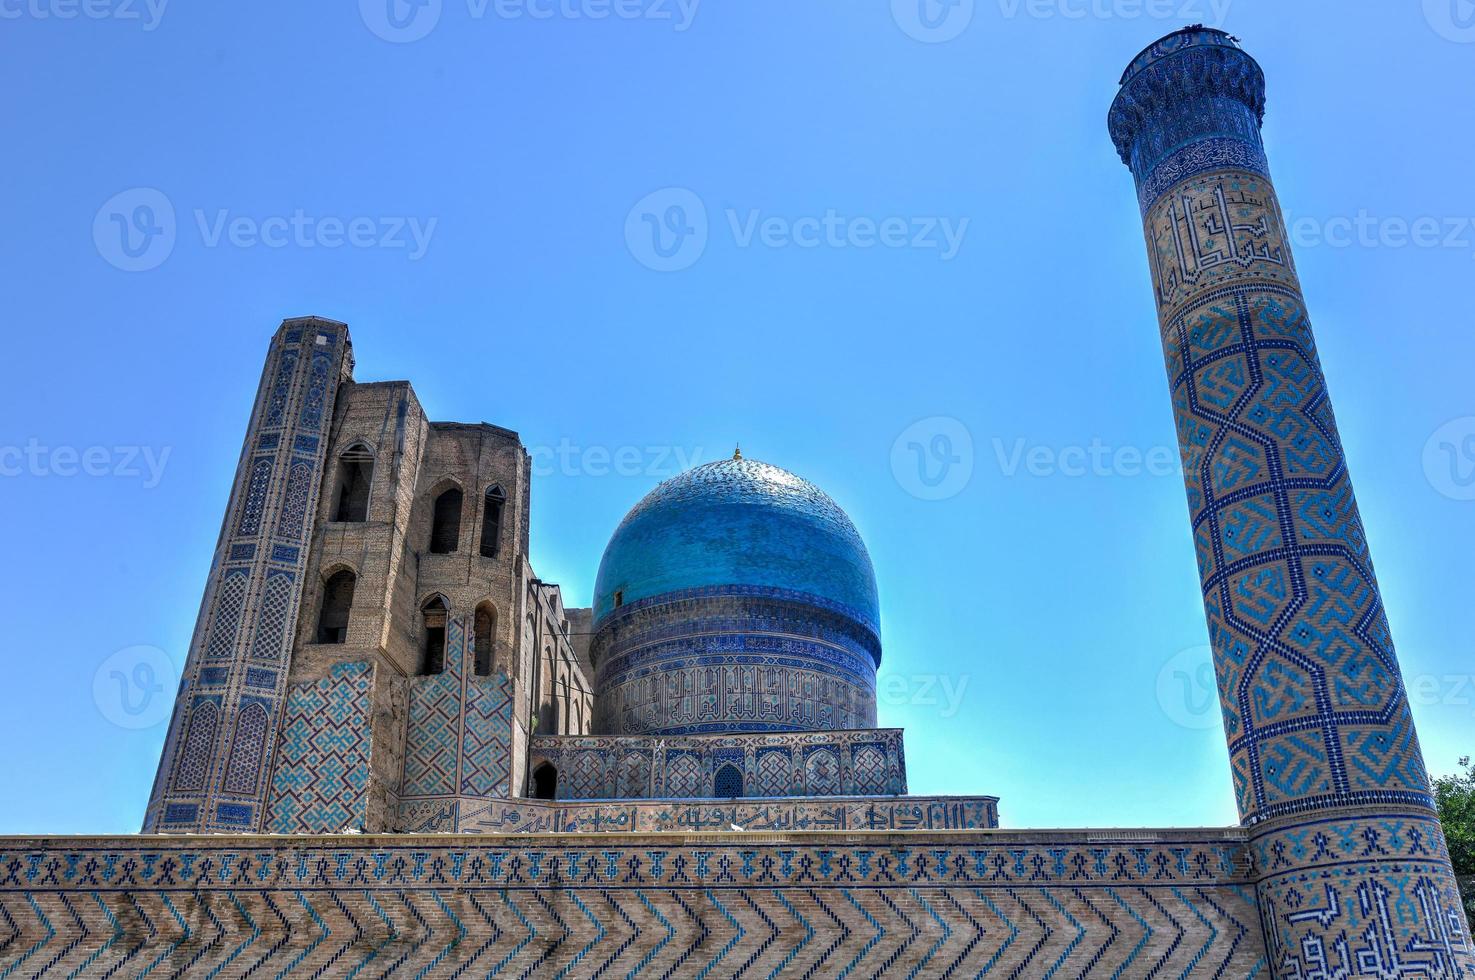 Bibi-Khanym-Moschee in Samarkand, Usbekistan. im 15. Jahrhundert war sie eine der größten und prächtigsten Moscheen der islamischen Welt. foto